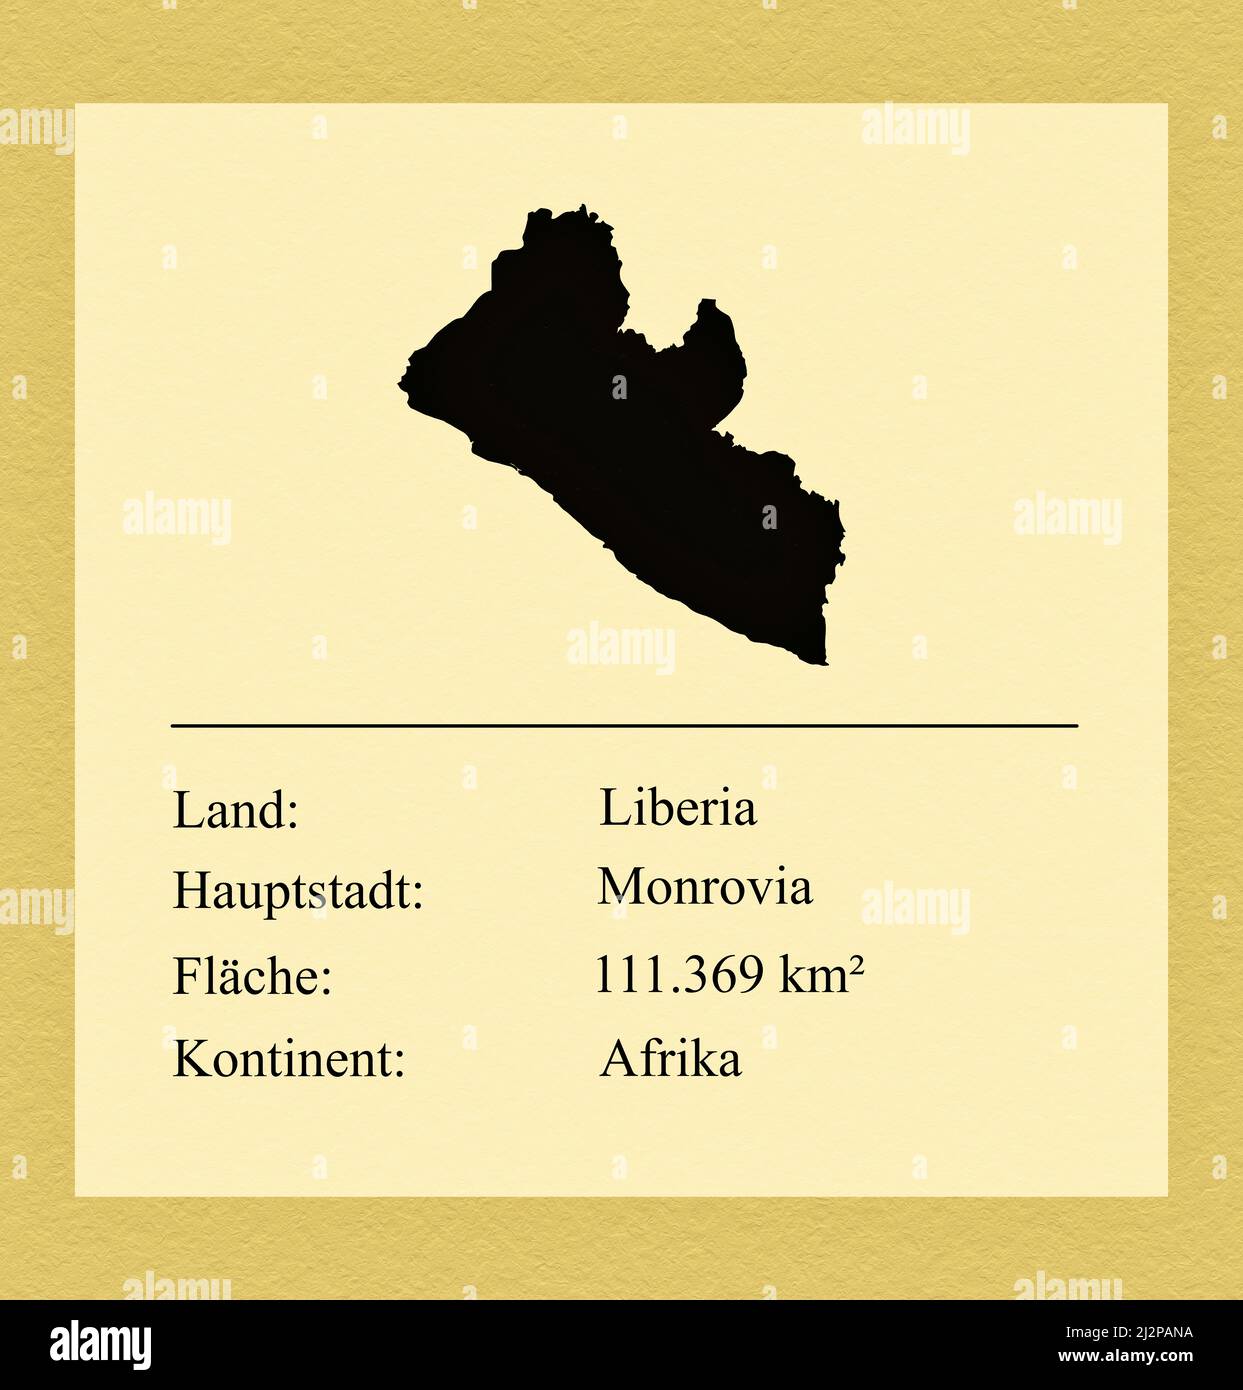 Umrisse des Landes Liberia, darunter ein kleiner Steckbrief mit Ländernamen, Hauptstadt, Fläche und Kontinent Stock Photo